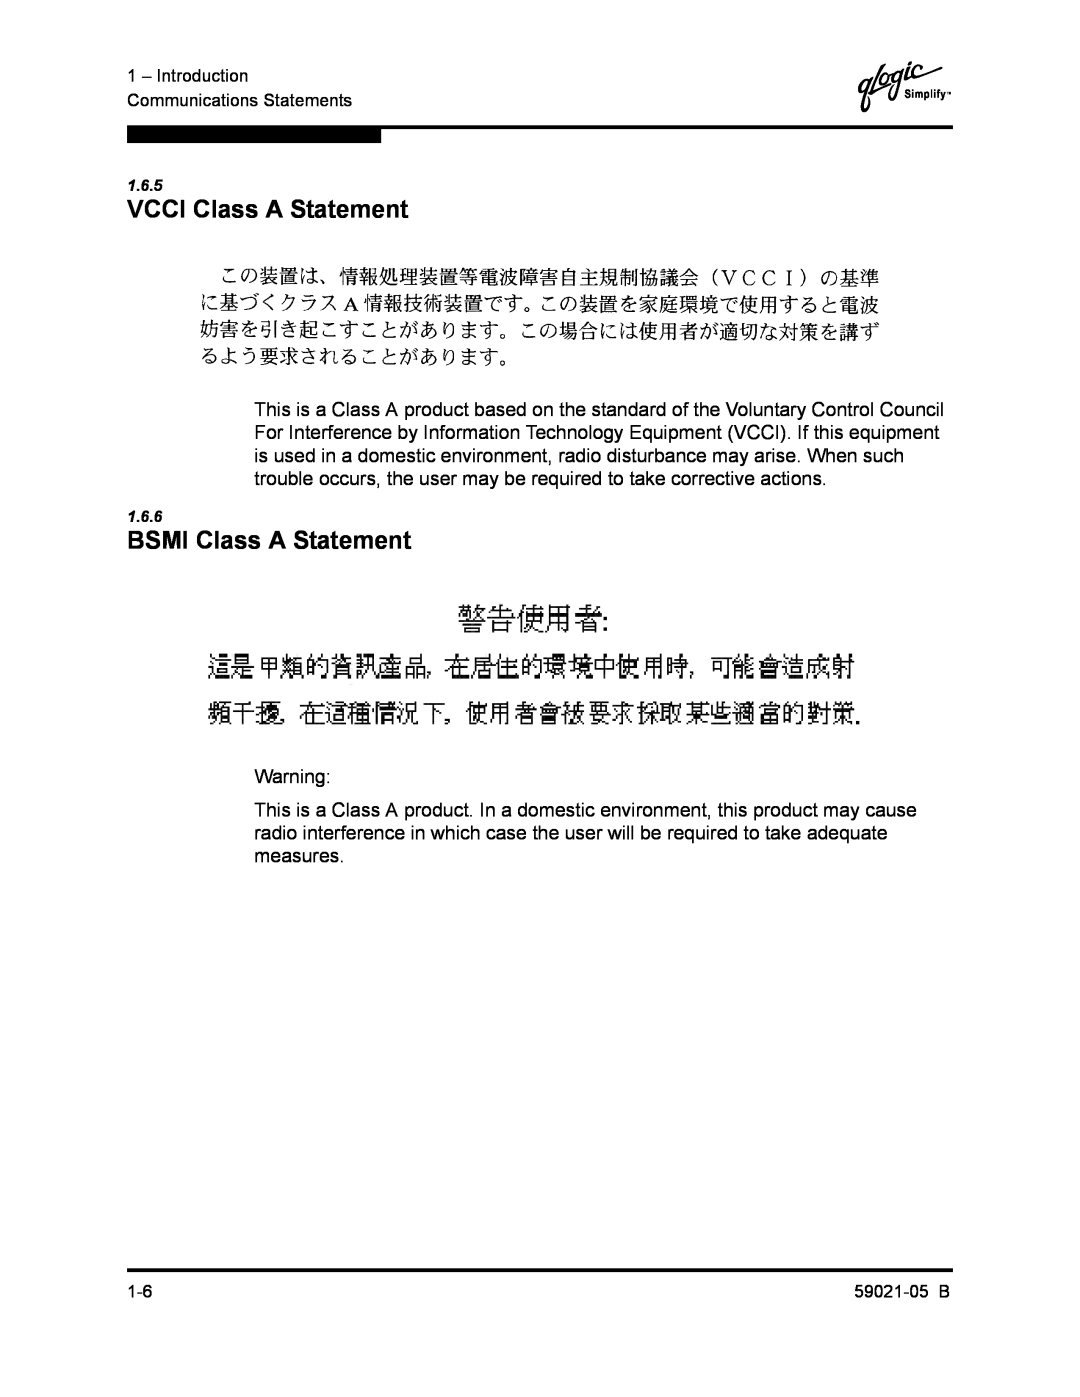 Q-Logic 59021-05 B manual VCCI Class A Statement, BSMI Class A Statement 